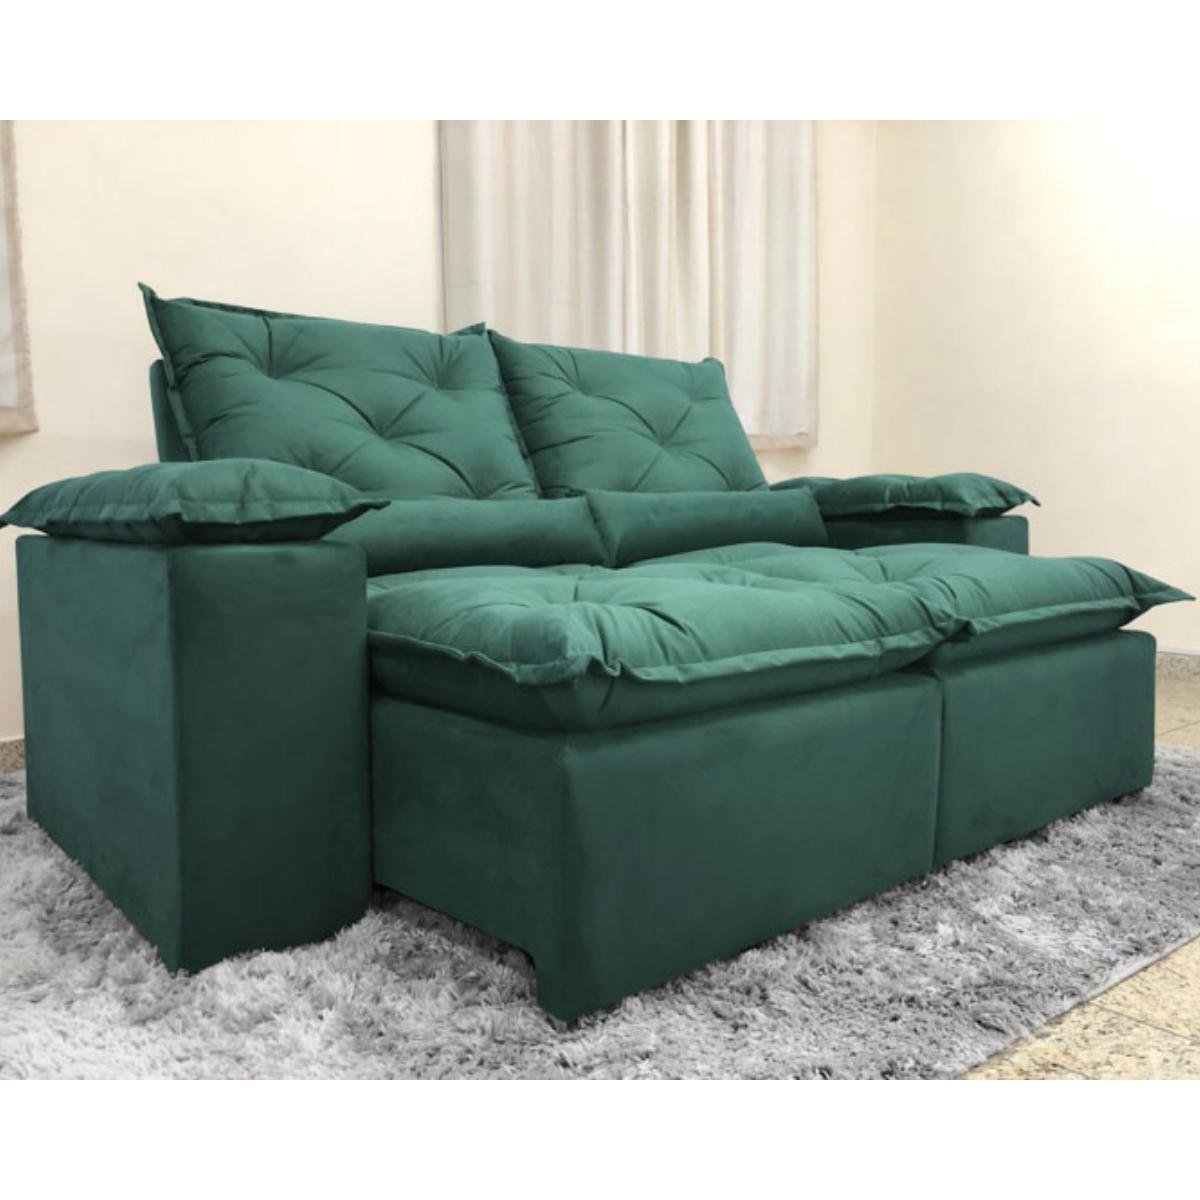 Sofa Reclinavel Retratil Design Elegante Athena 2,30m Veludo Cor:Verde